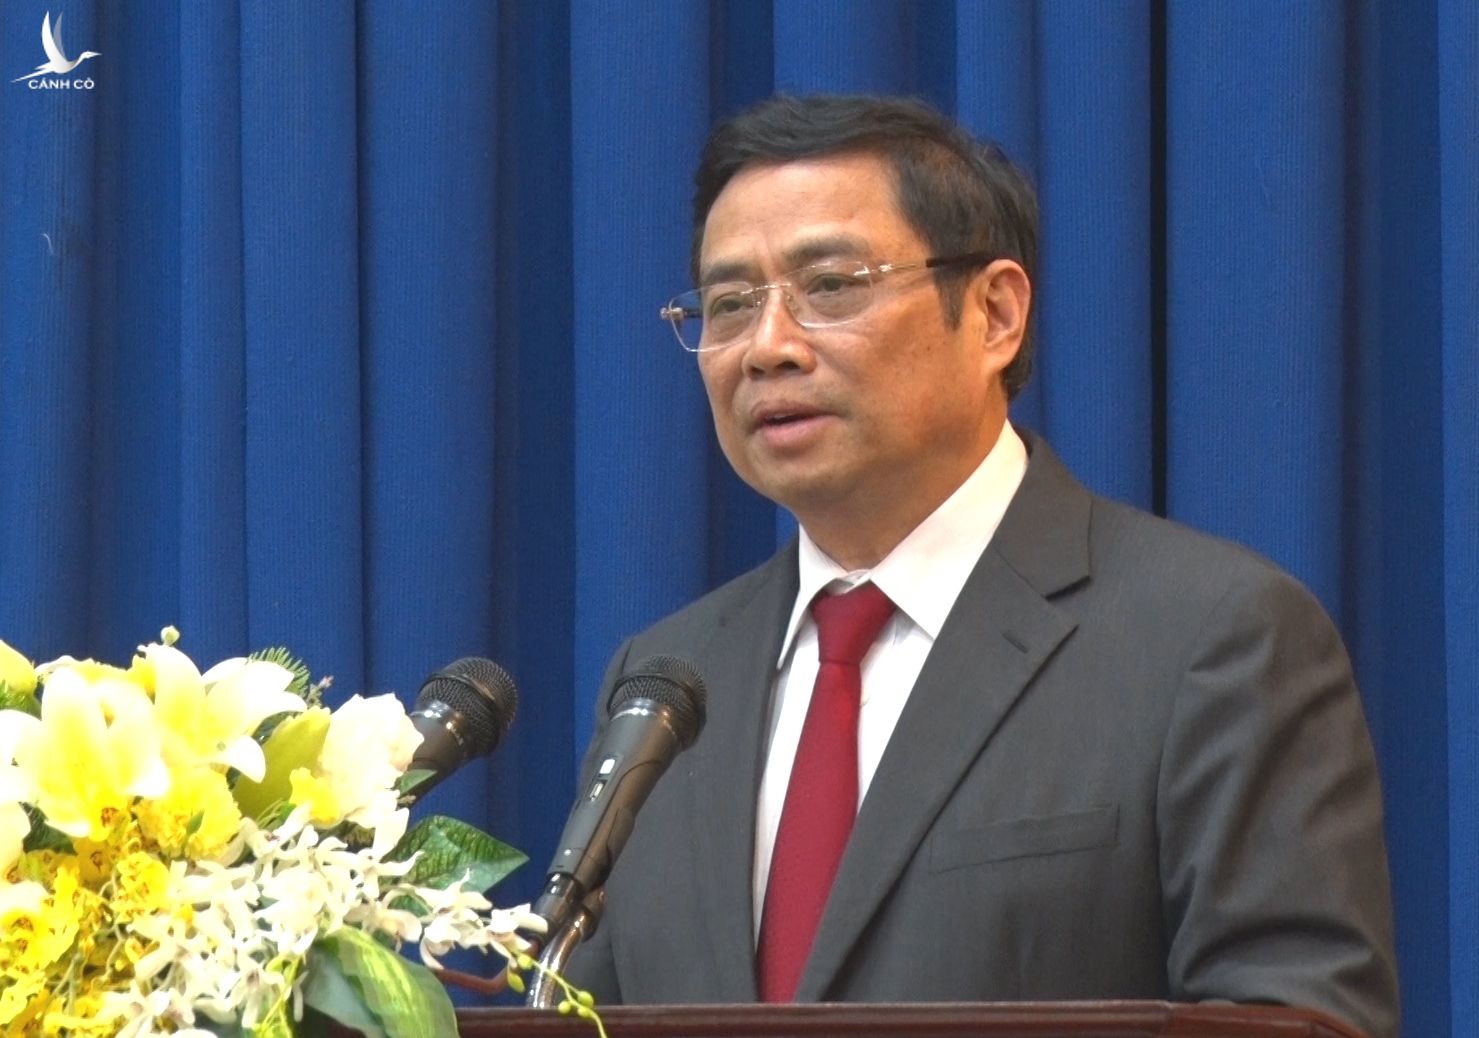 Trưởng ban Tổ chức Trung ương Phạm Minh Chính phát biểu tại buổi lễ - Ảnh: Minh Châu